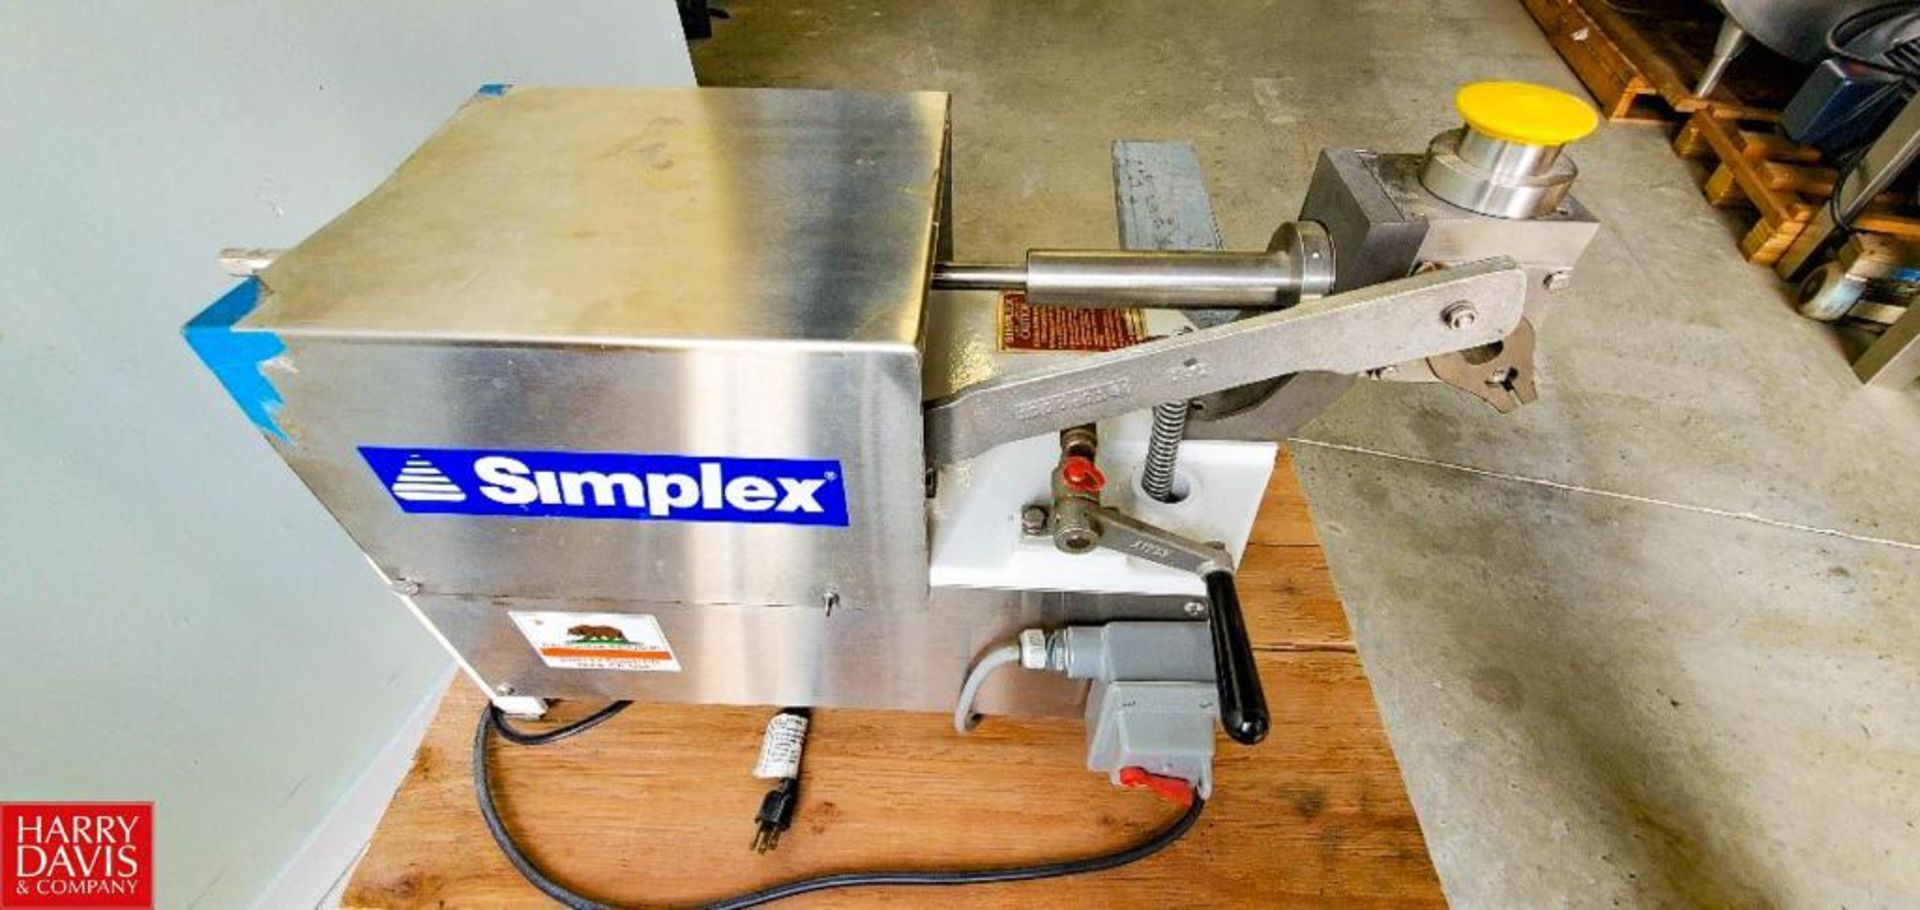 Simplex Automatic Piston Filler with Hopper (Location: Miami, FL) - Rigging Fee: $50